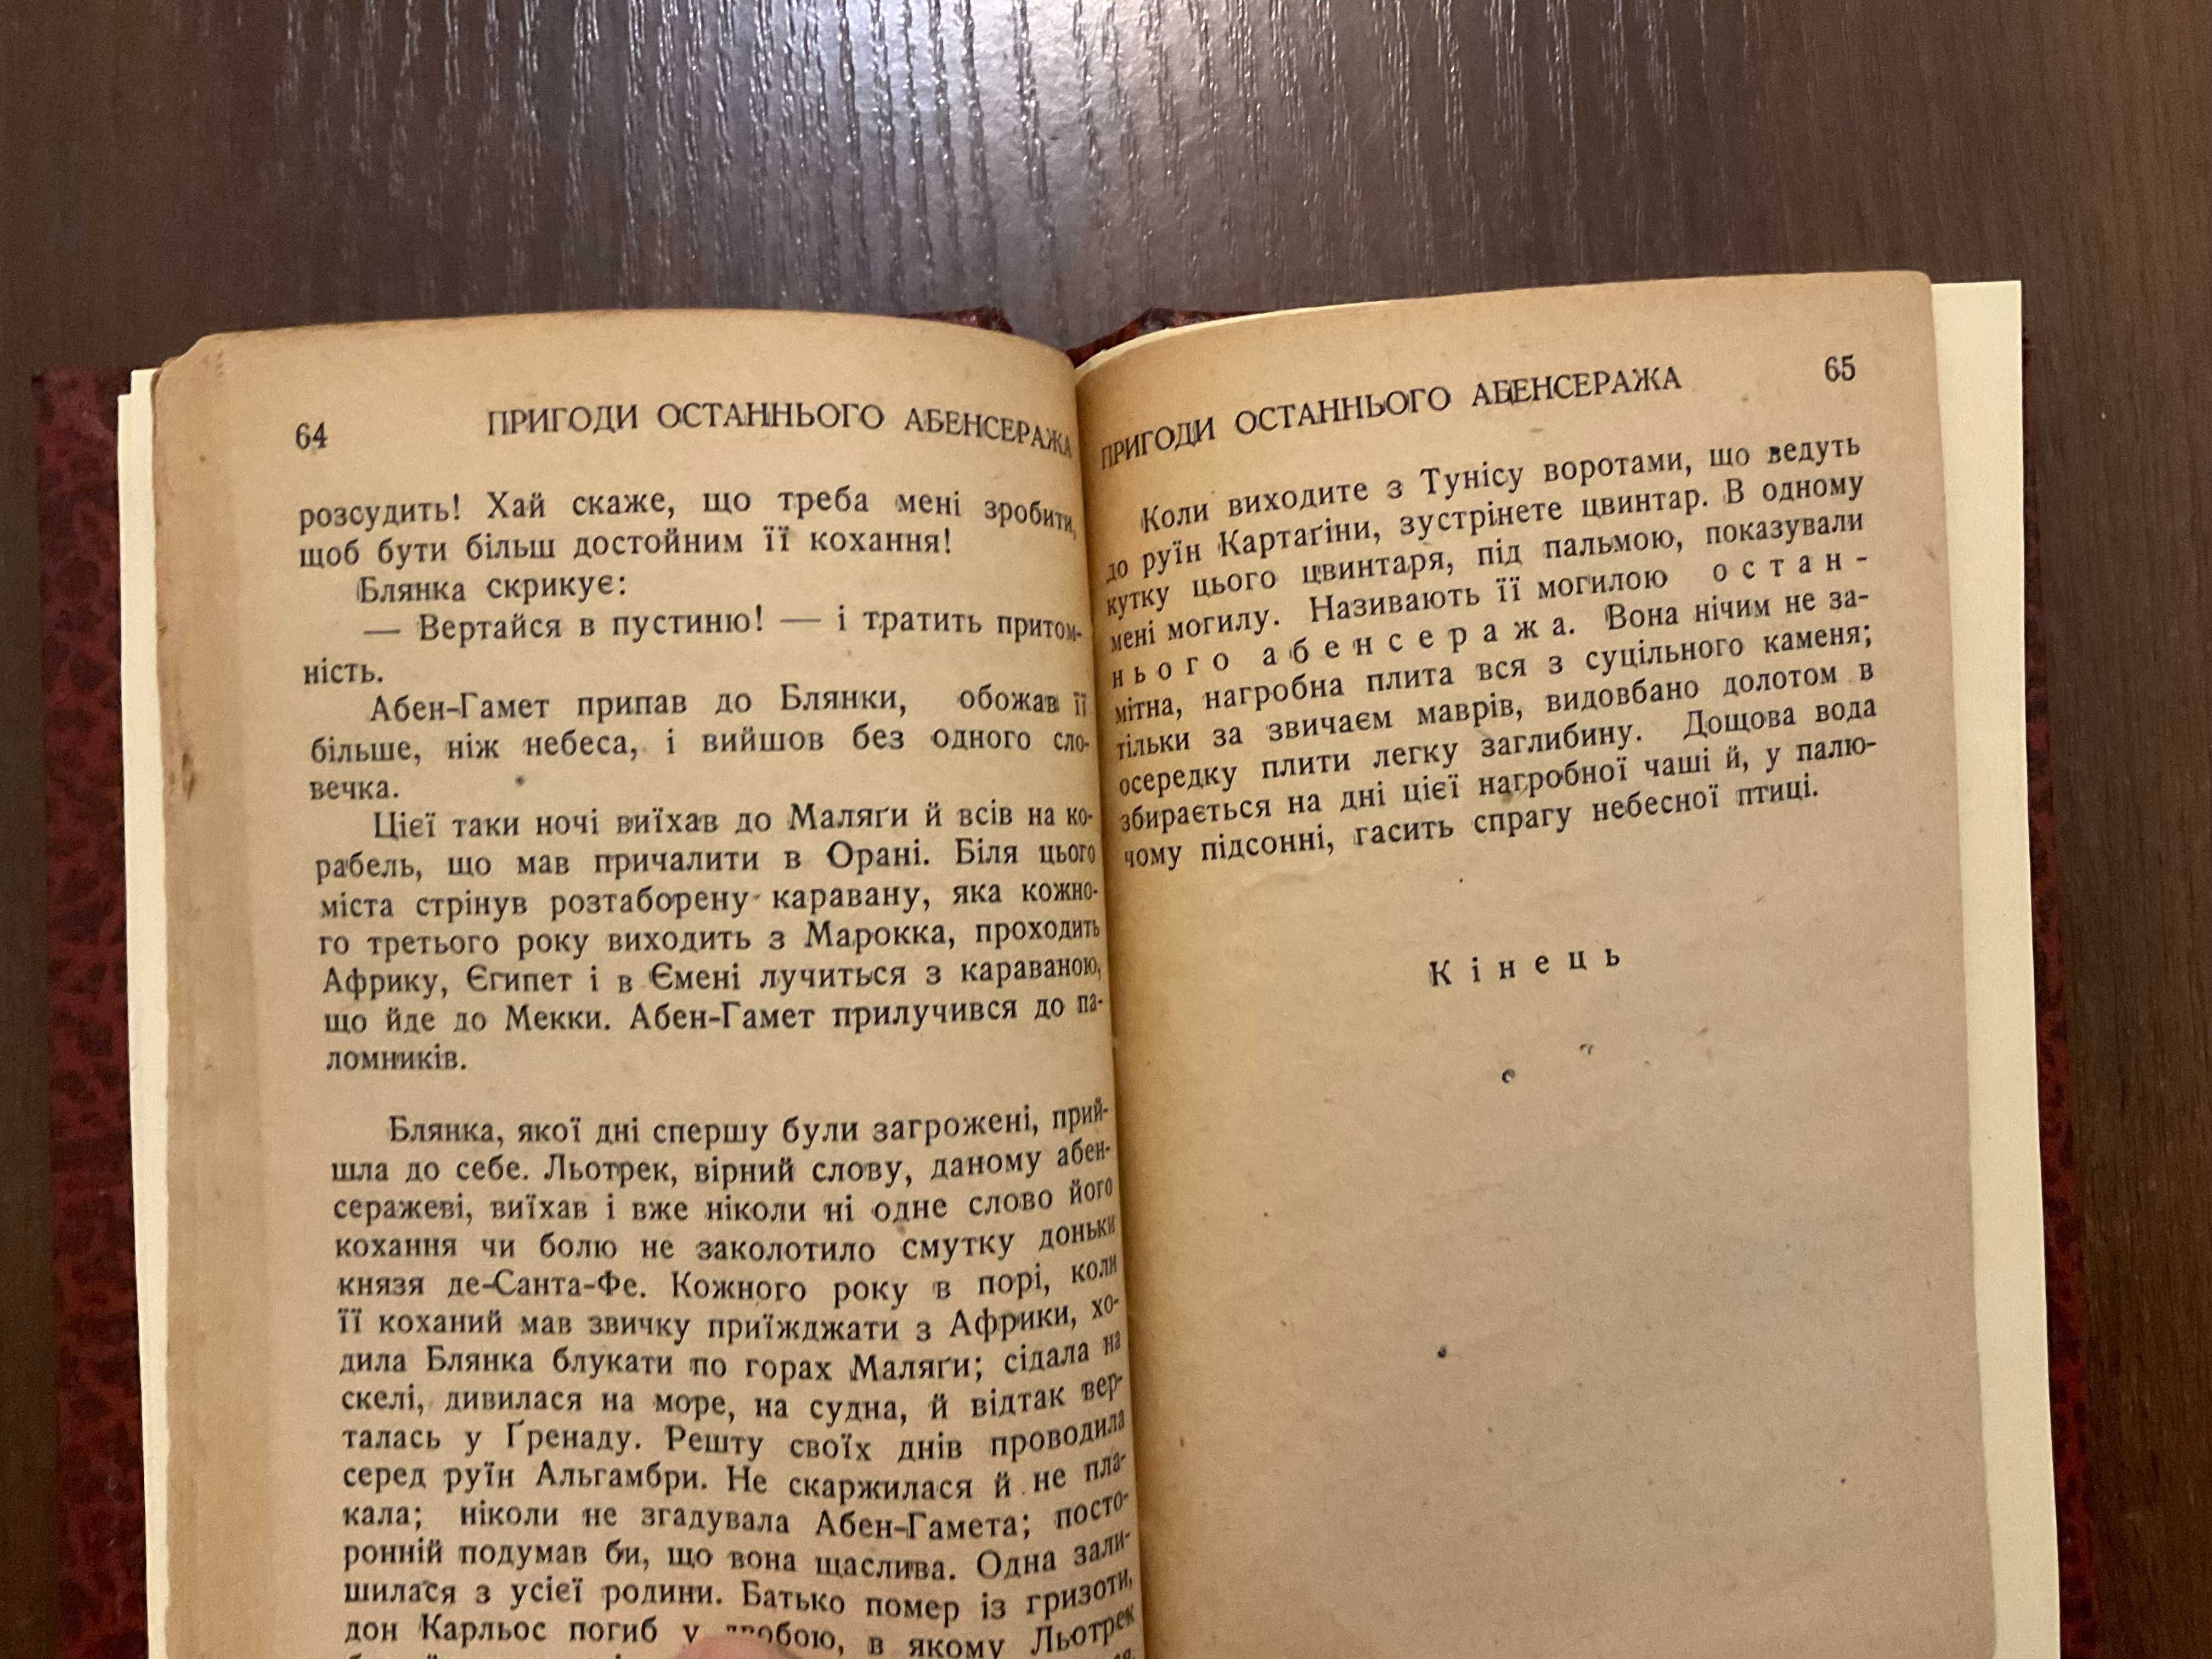 1945 Пригоди останнього абенсеража Переклад М Небелюк Підпис Діаспора